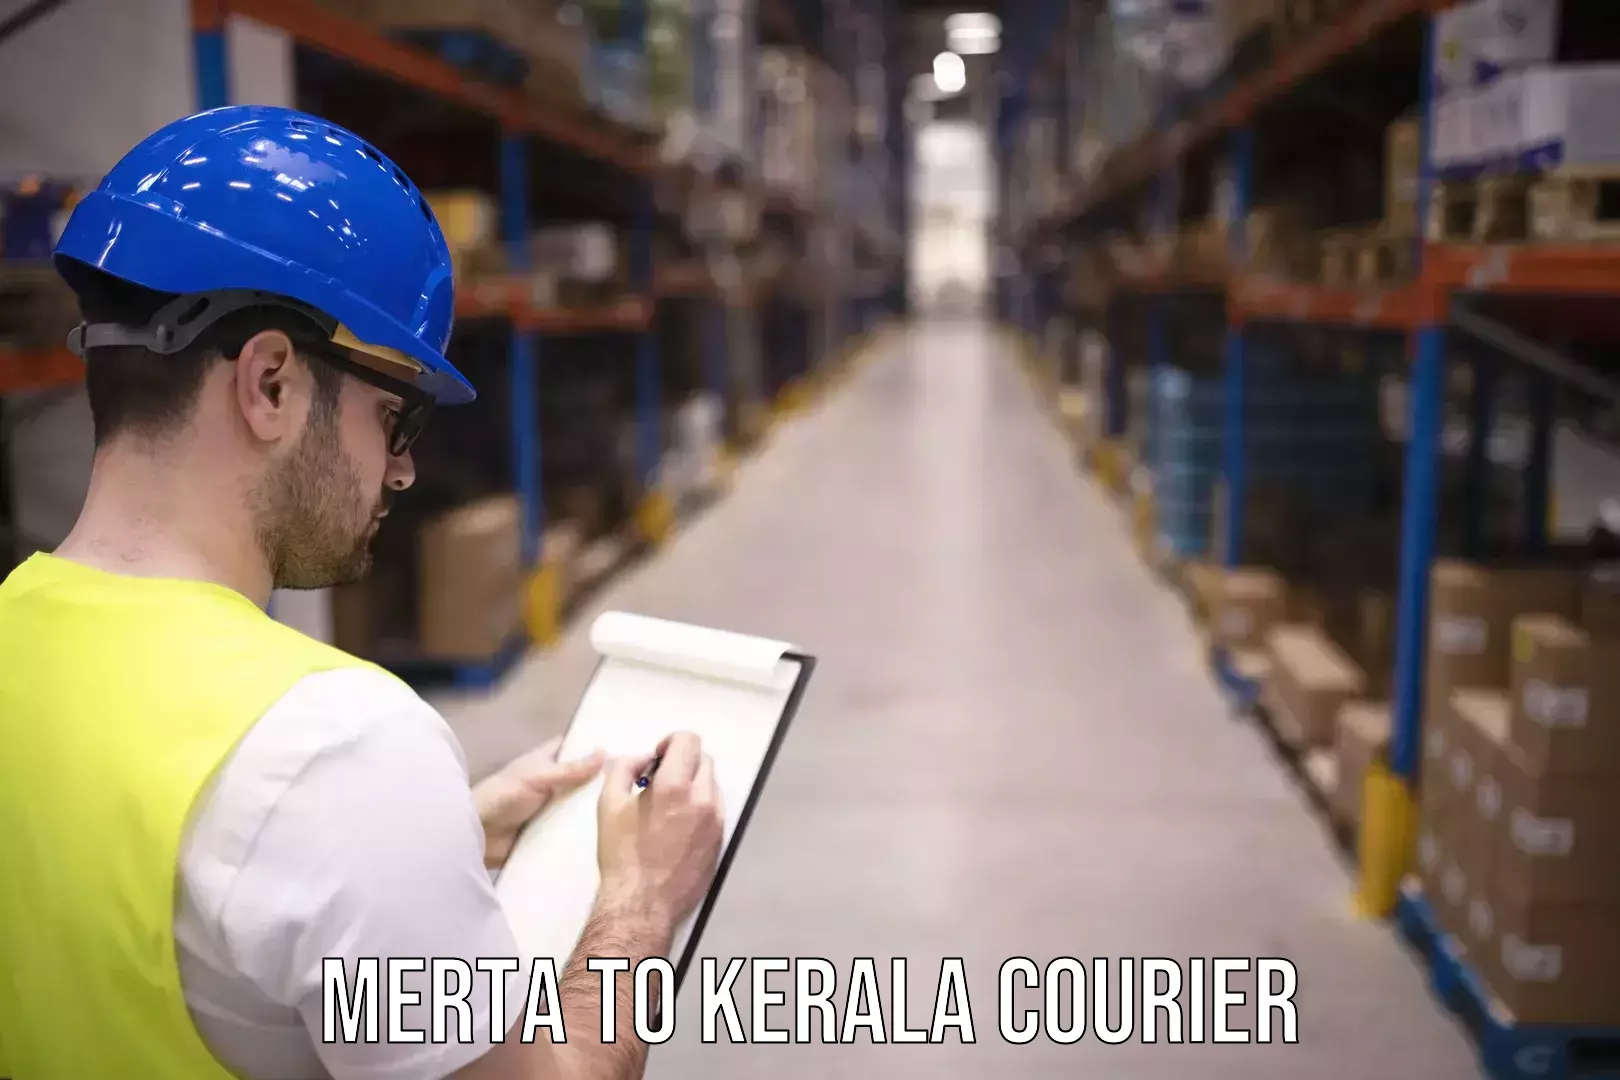 Customer-focused courier Merta to Kallikkad